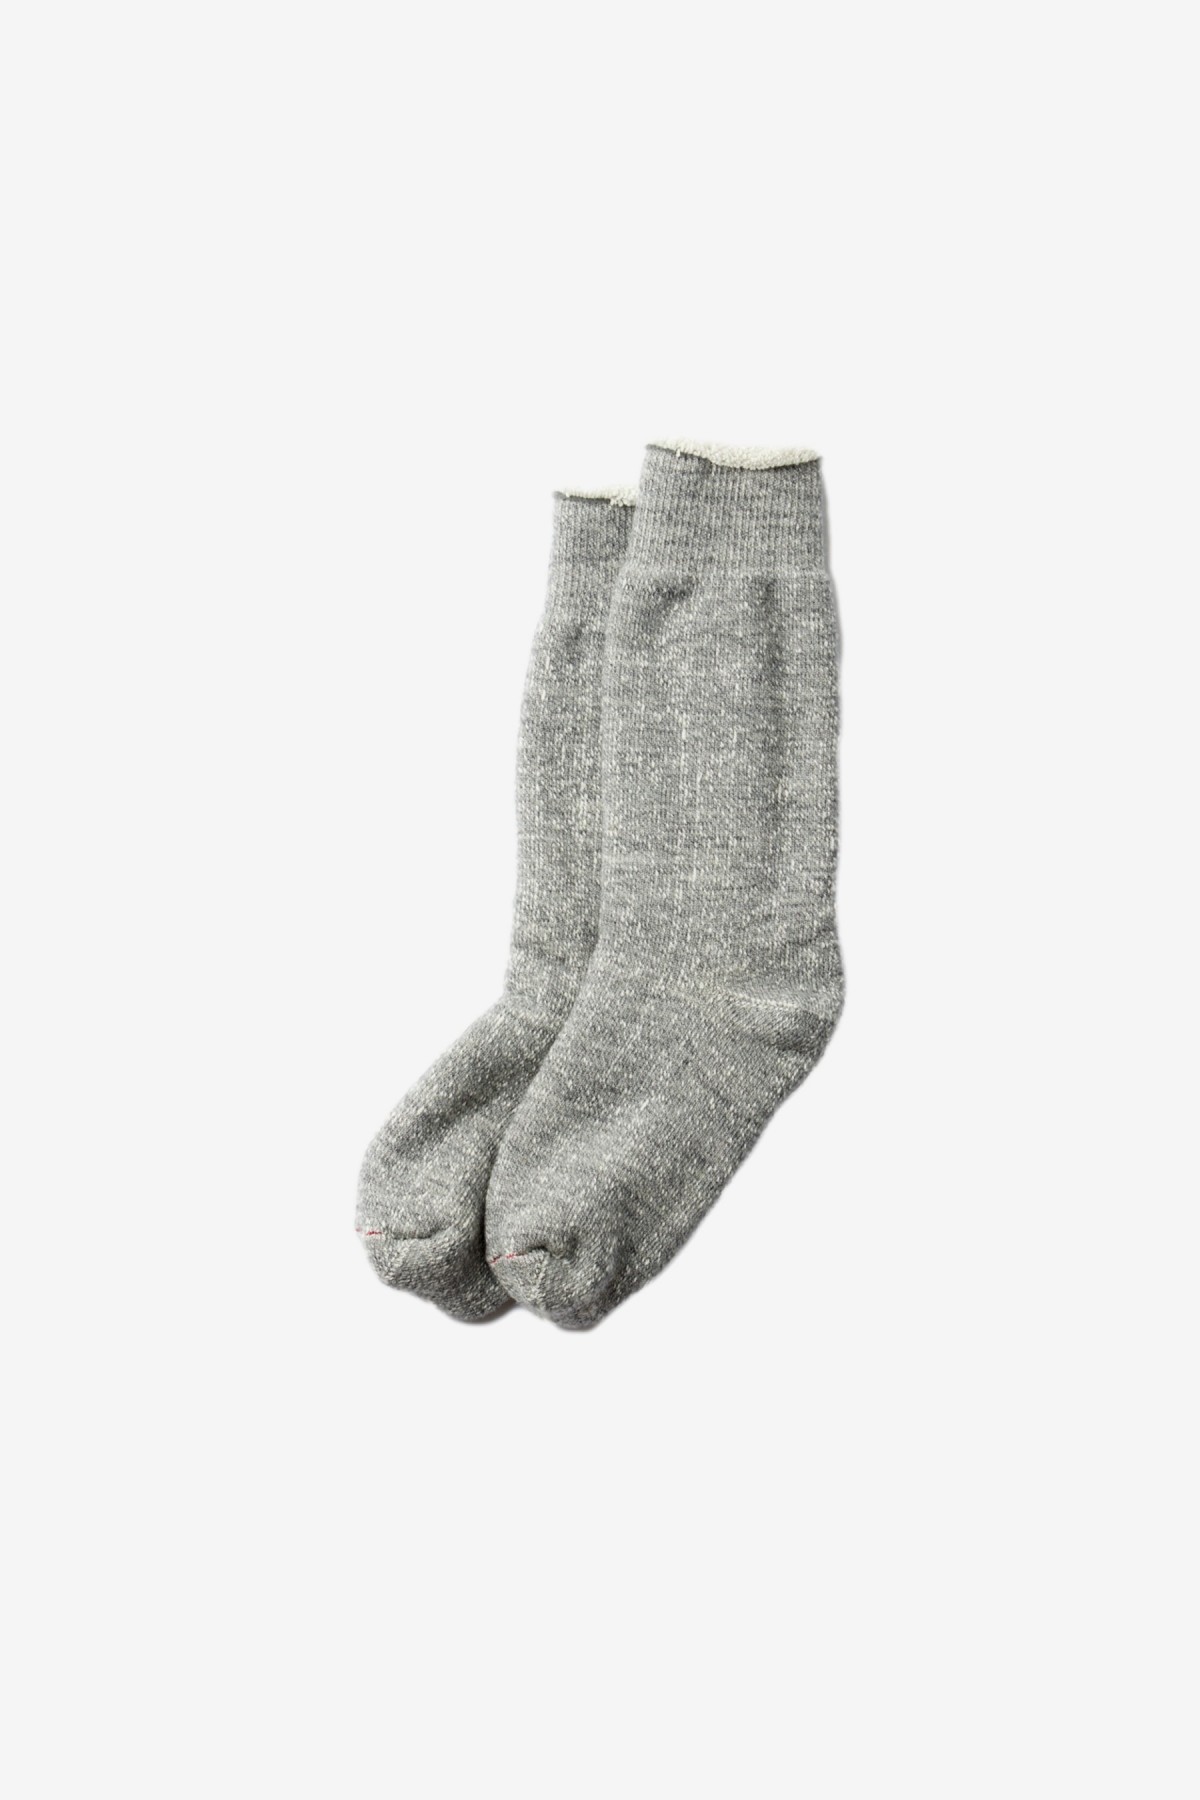 RoToTo Double Face Socks in Medium Gray